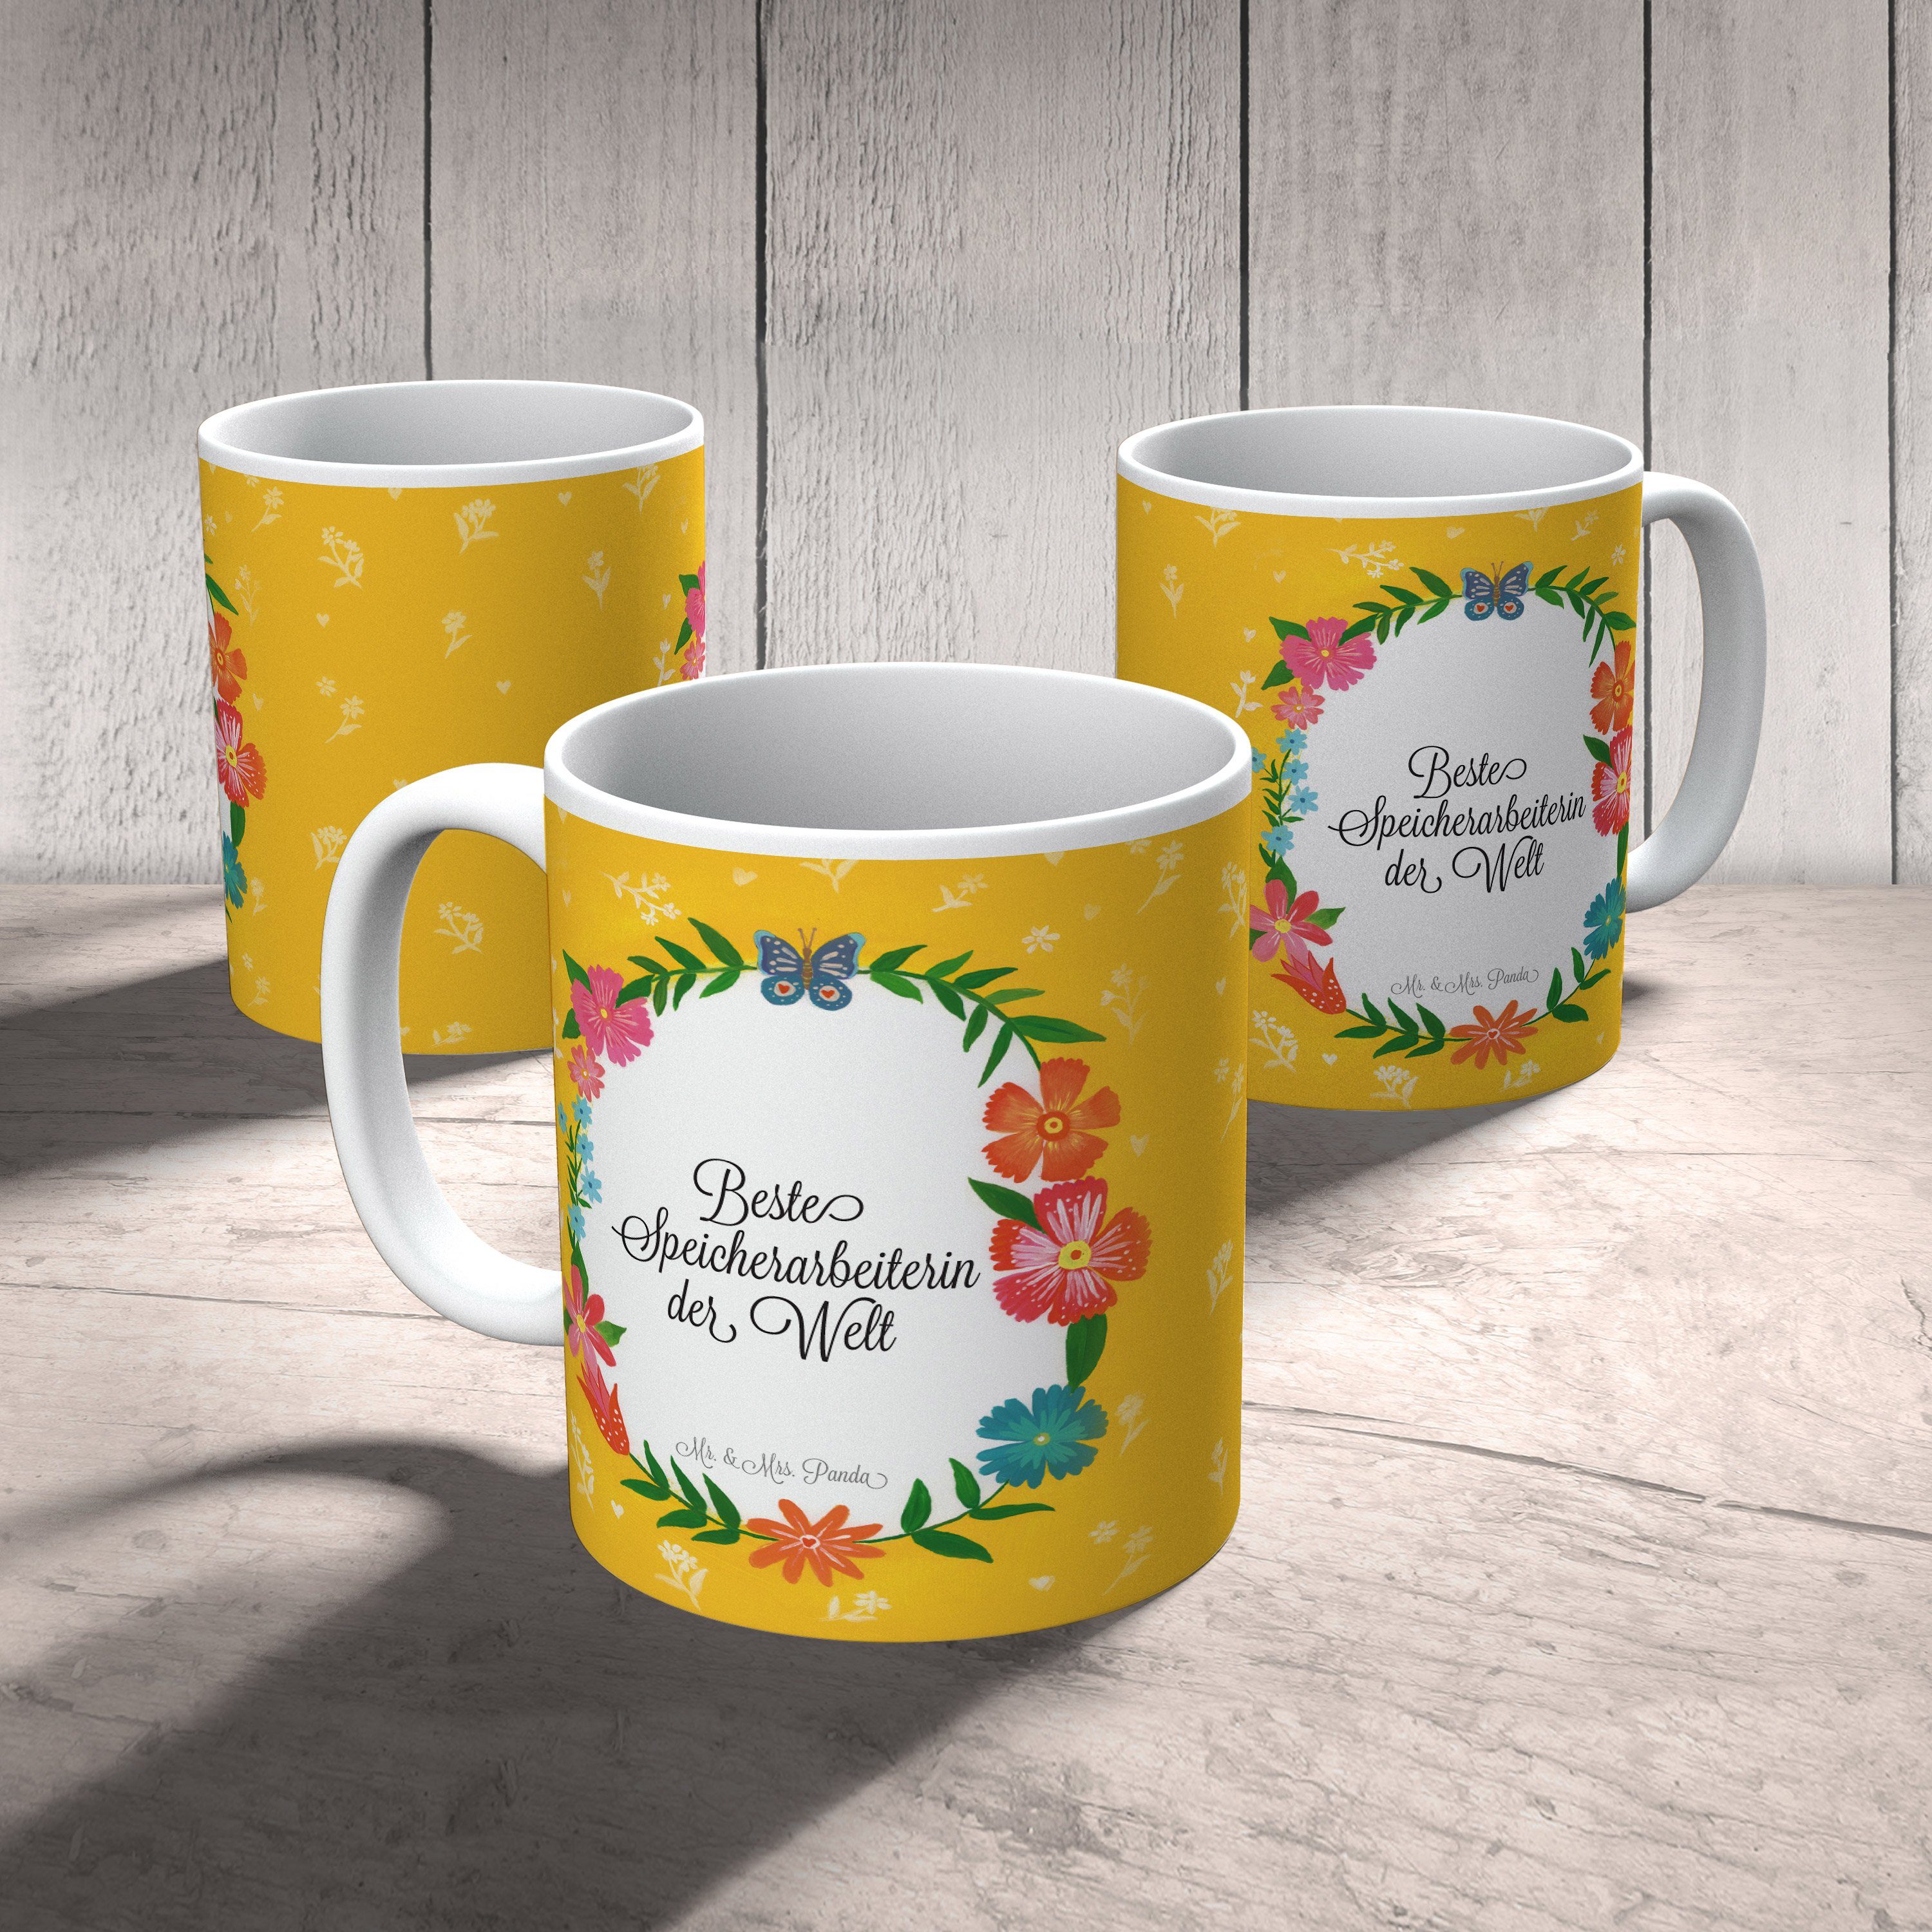 Geschenk, Berufsausbildung, Tasse Speicherarbeiterin Kaffeetasse, & Abschlu, Mr. Keramik Mrs. Panda -